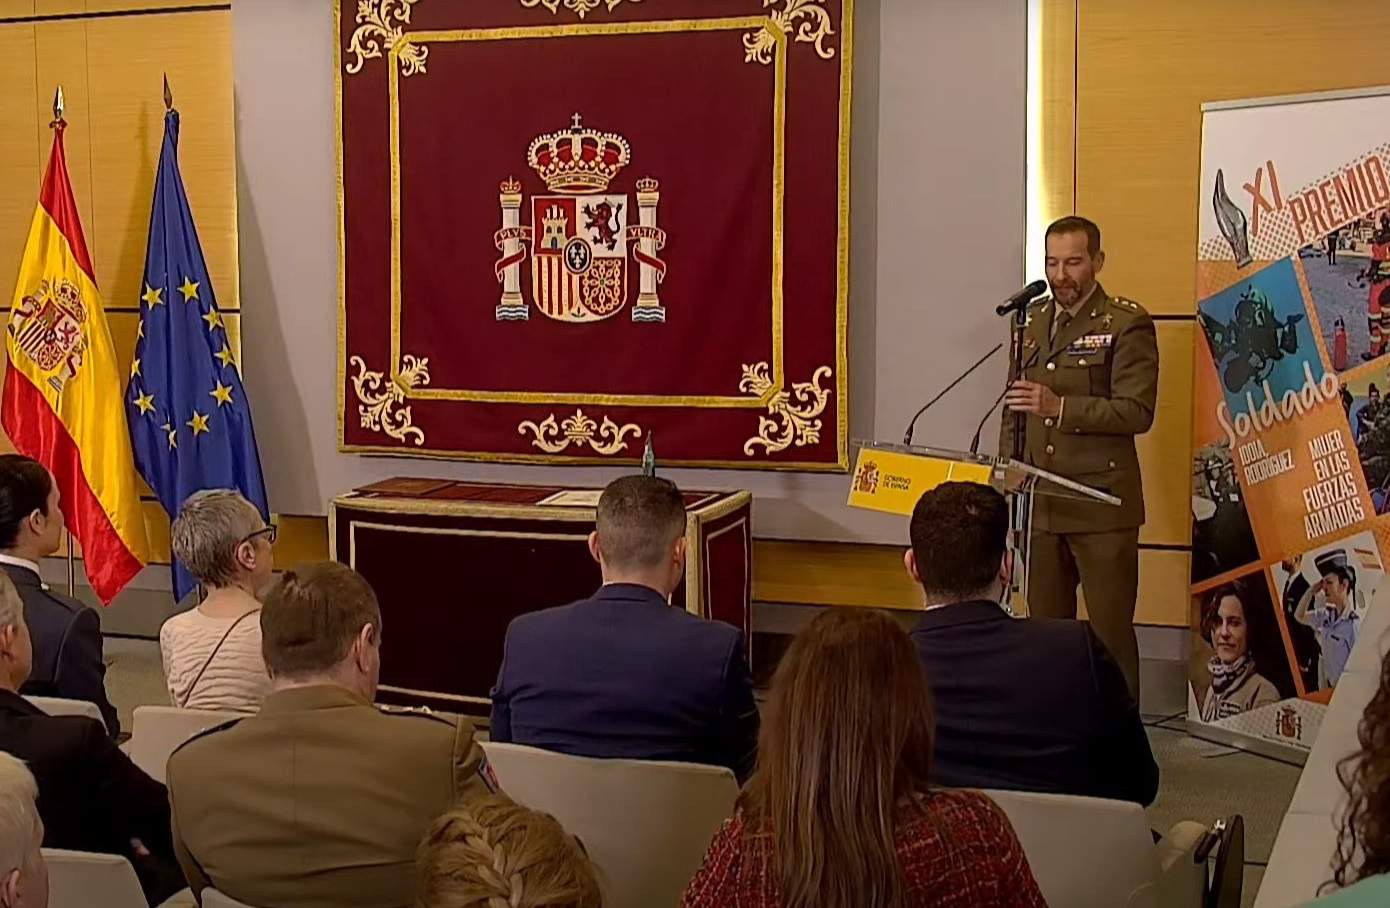 El Frank Sinatra de l'exèrcit: el vídeo viral d'un militar espanyol cantant en un acte oficial